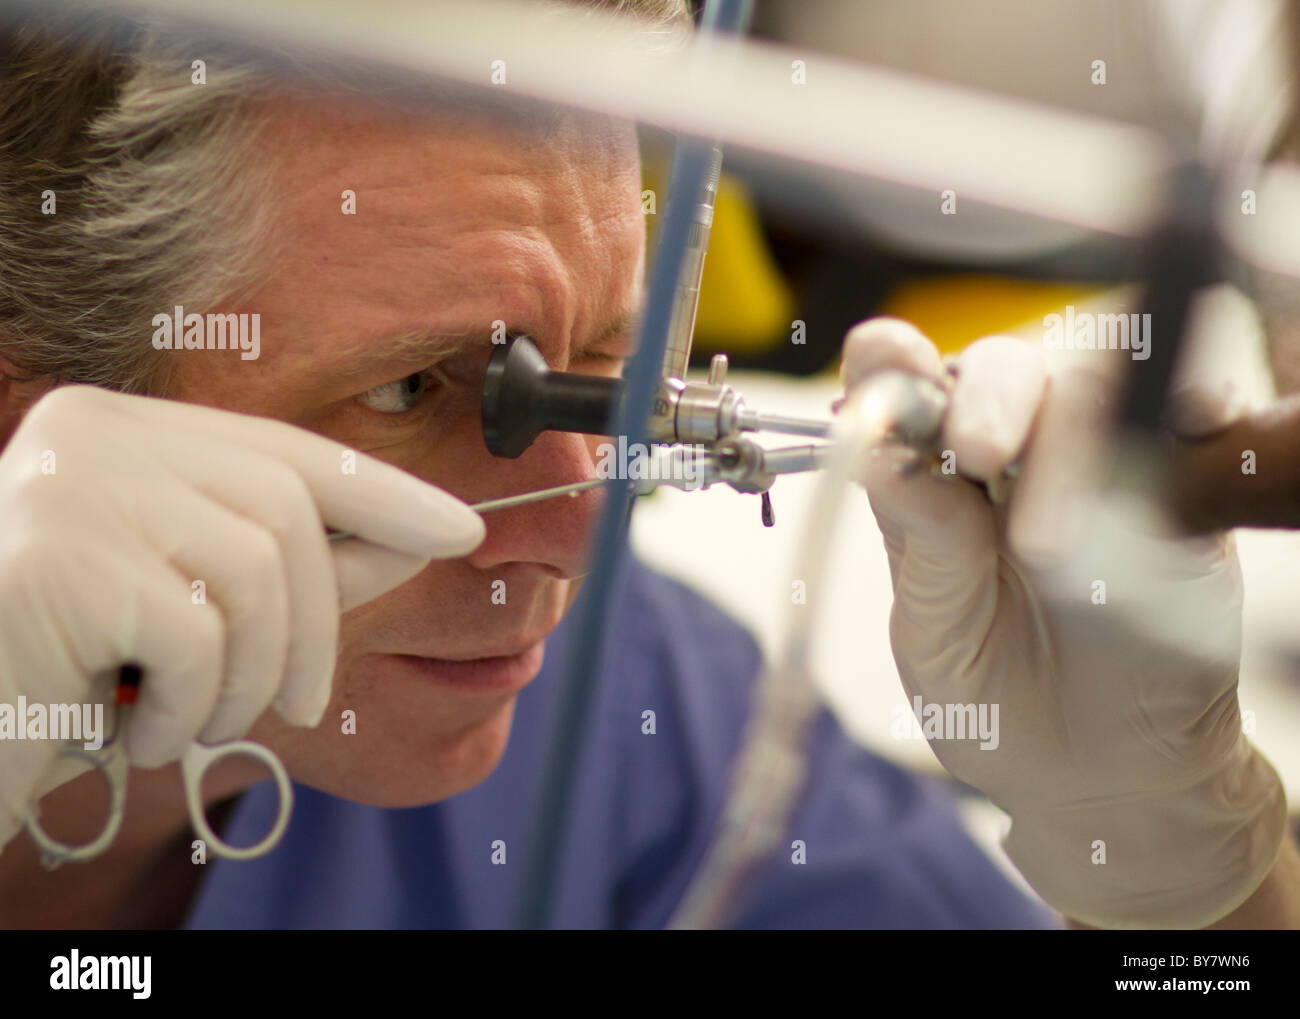 Ein Urologe eine Blasenspiegelung durchführen, um einen Fremdkörper aus der Blase (in diesem Fall ein radioaktives Implantat) zu entfernen. Stockfoto